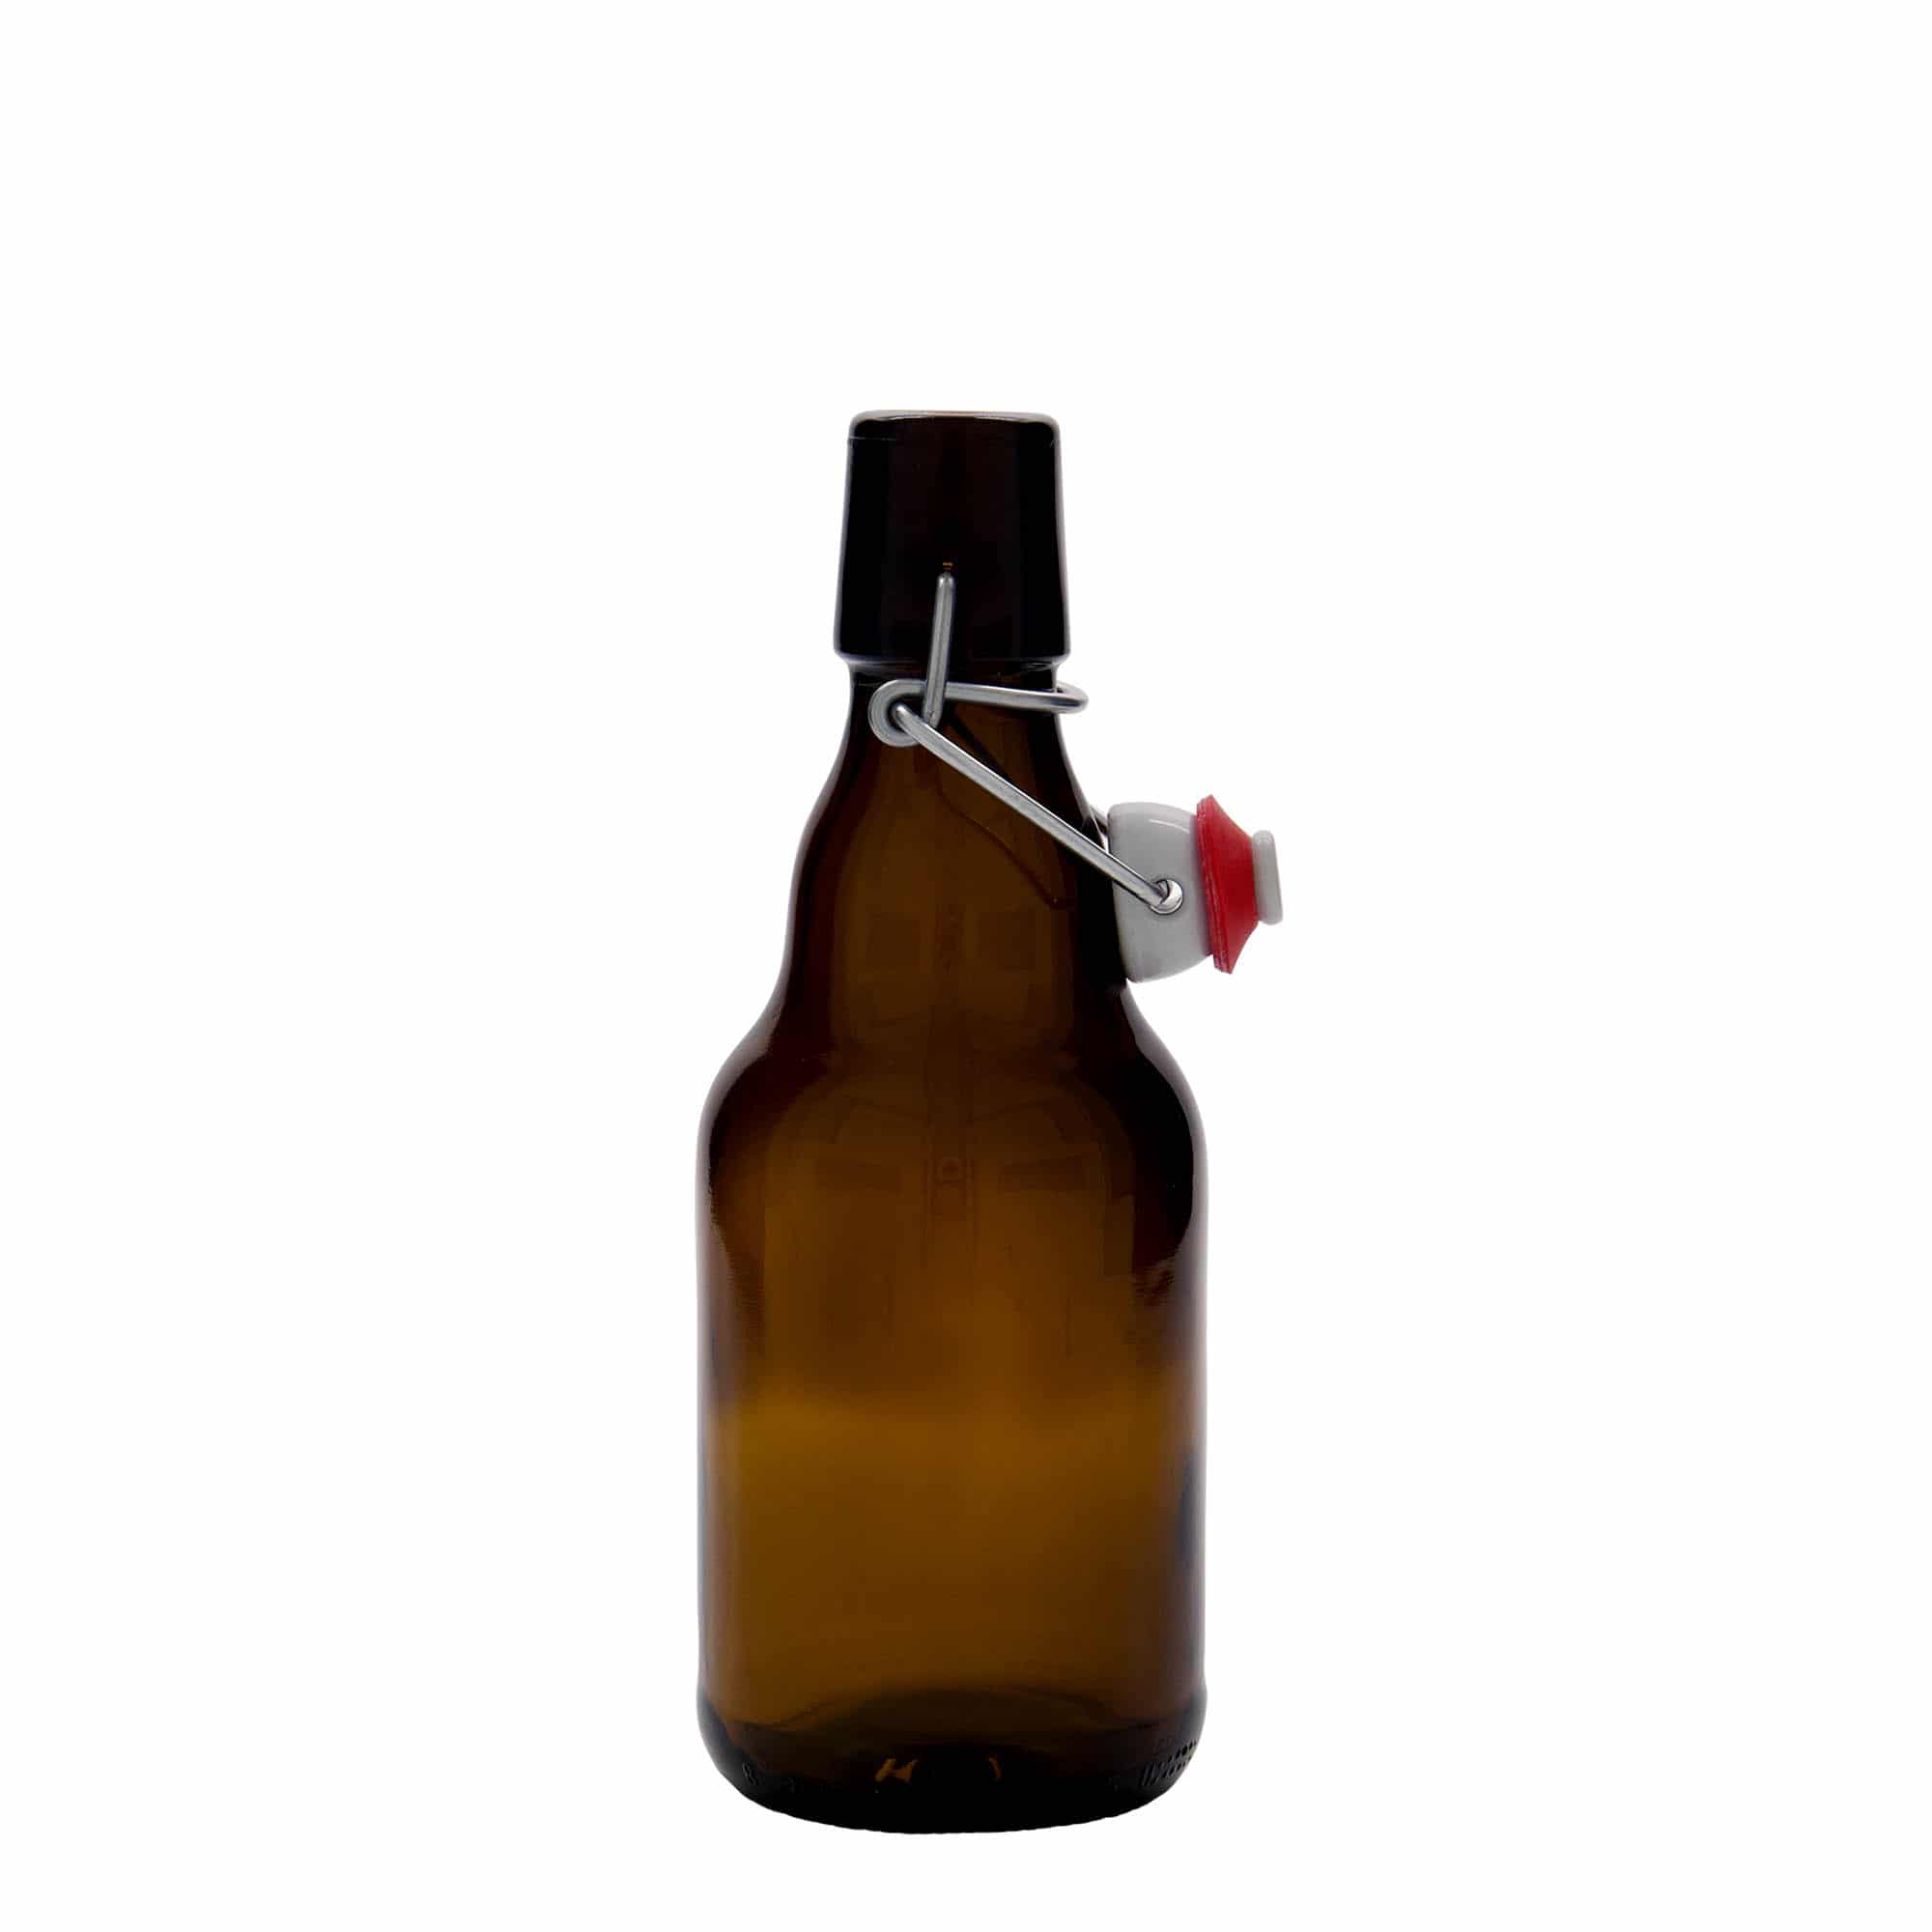 330 ml ölflaska 'Steinie', glas, brun, mynning: patentkork